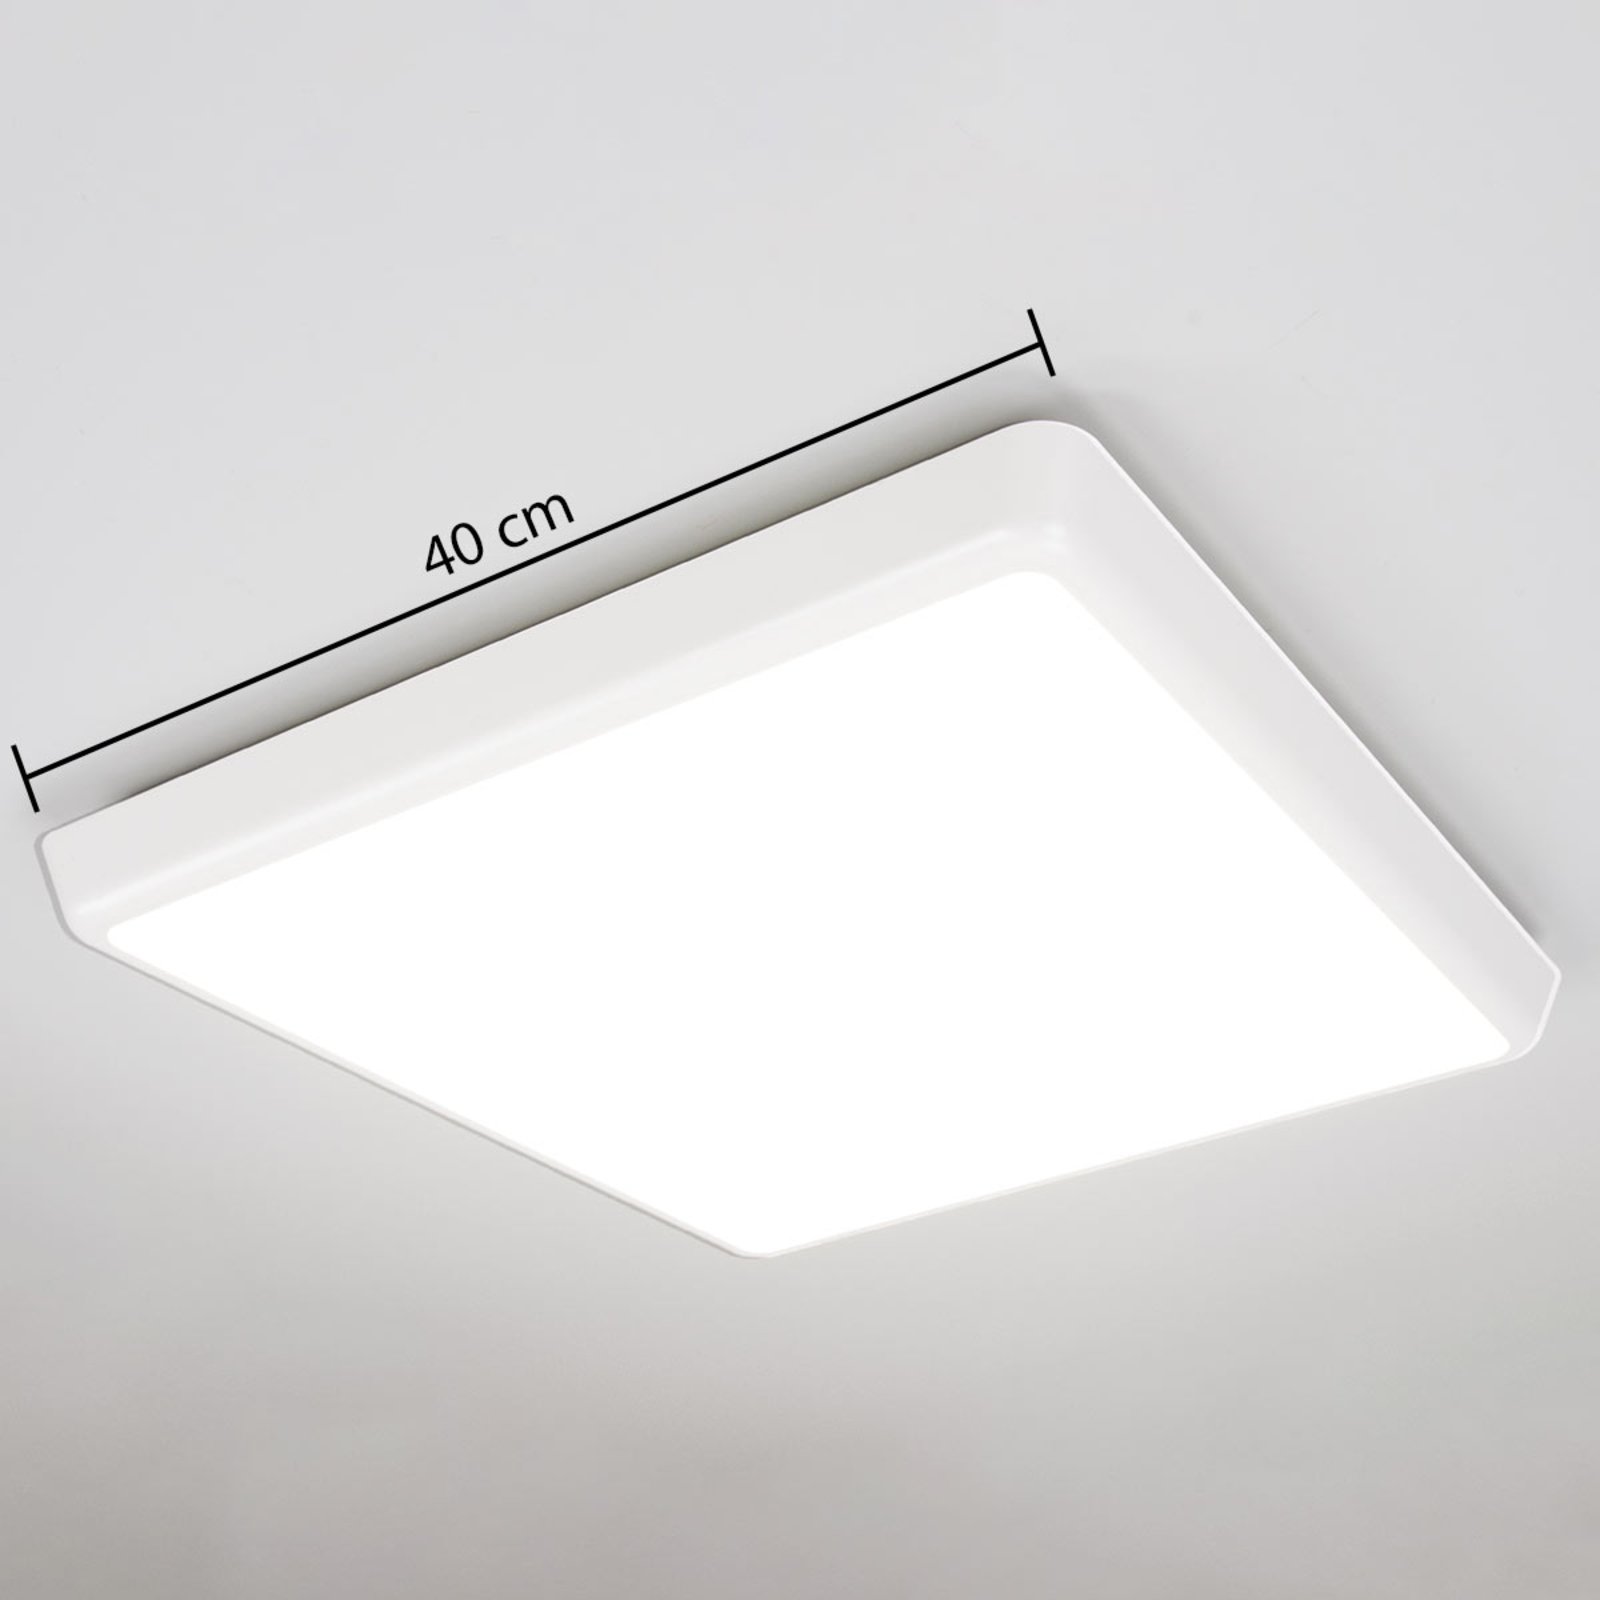 LED ceiling light Augustin, angular, 40 x 40 cm